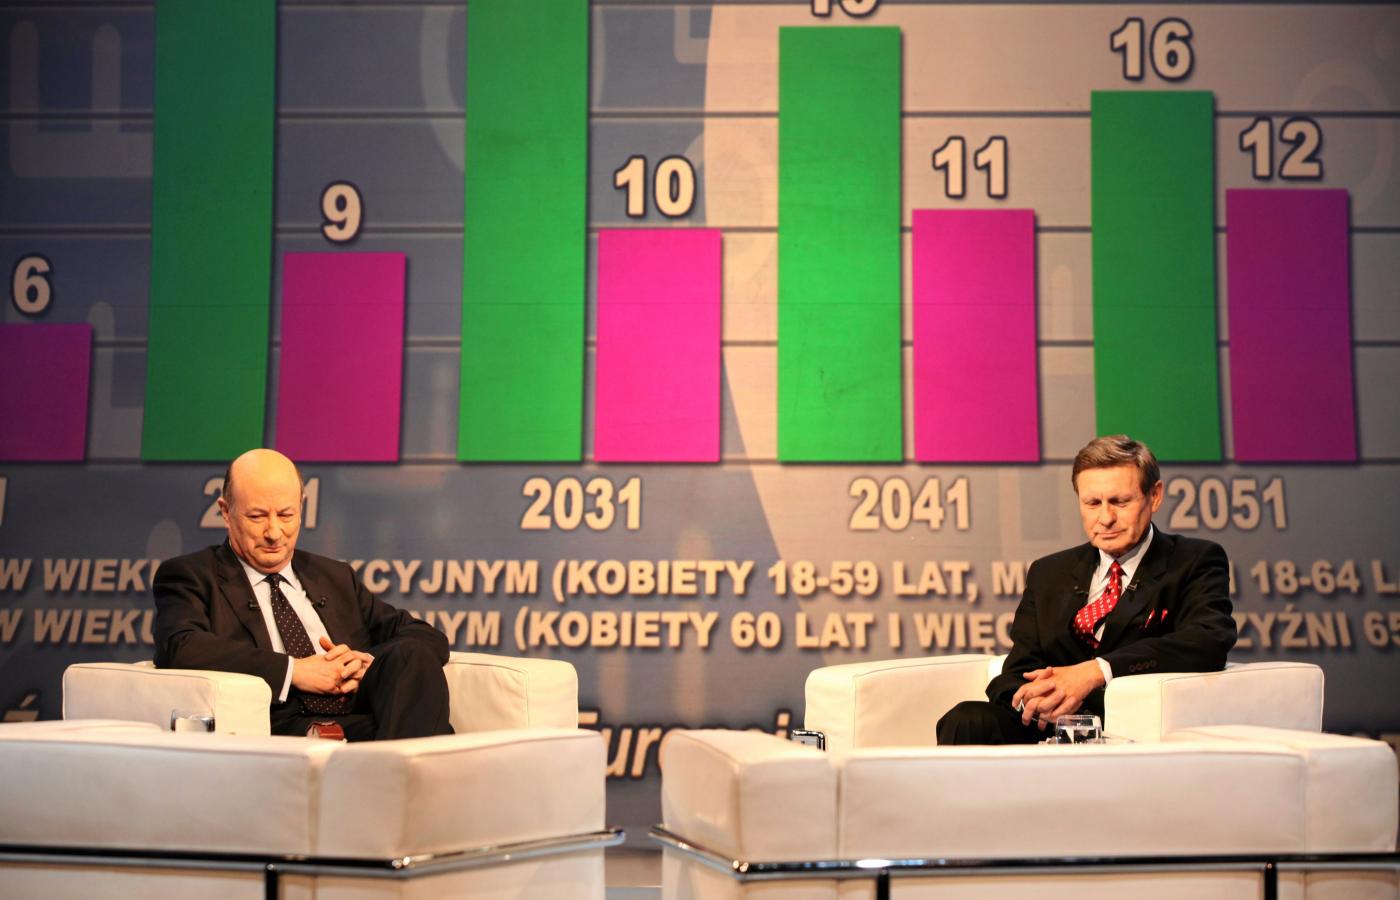 Debata ministra finansów Jacka Rostowskiego z Leszkiem Balcerowiczem dotyczyła nie tylko OFE, ale dwóch różnych wizji roli państwa, i jego długu, w gospodarce.